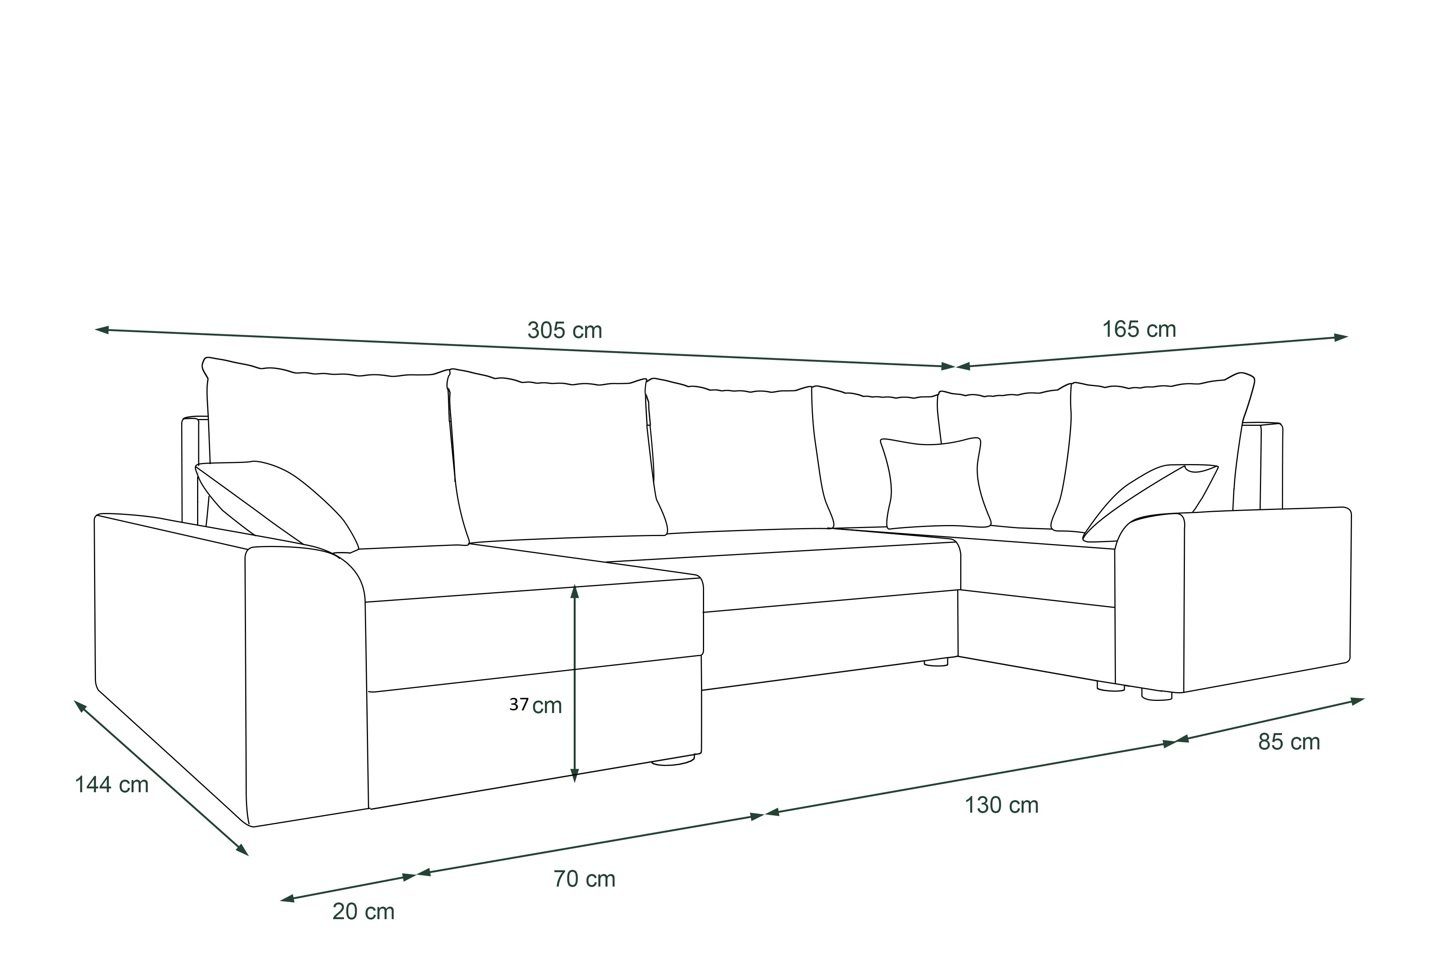 Design mit Modern Bailey, Bettfunktion, U-Form, Wohnlandschaft Bettkasten, Sitzkomfort, Eckcouch, Stylefy mit Sofa,